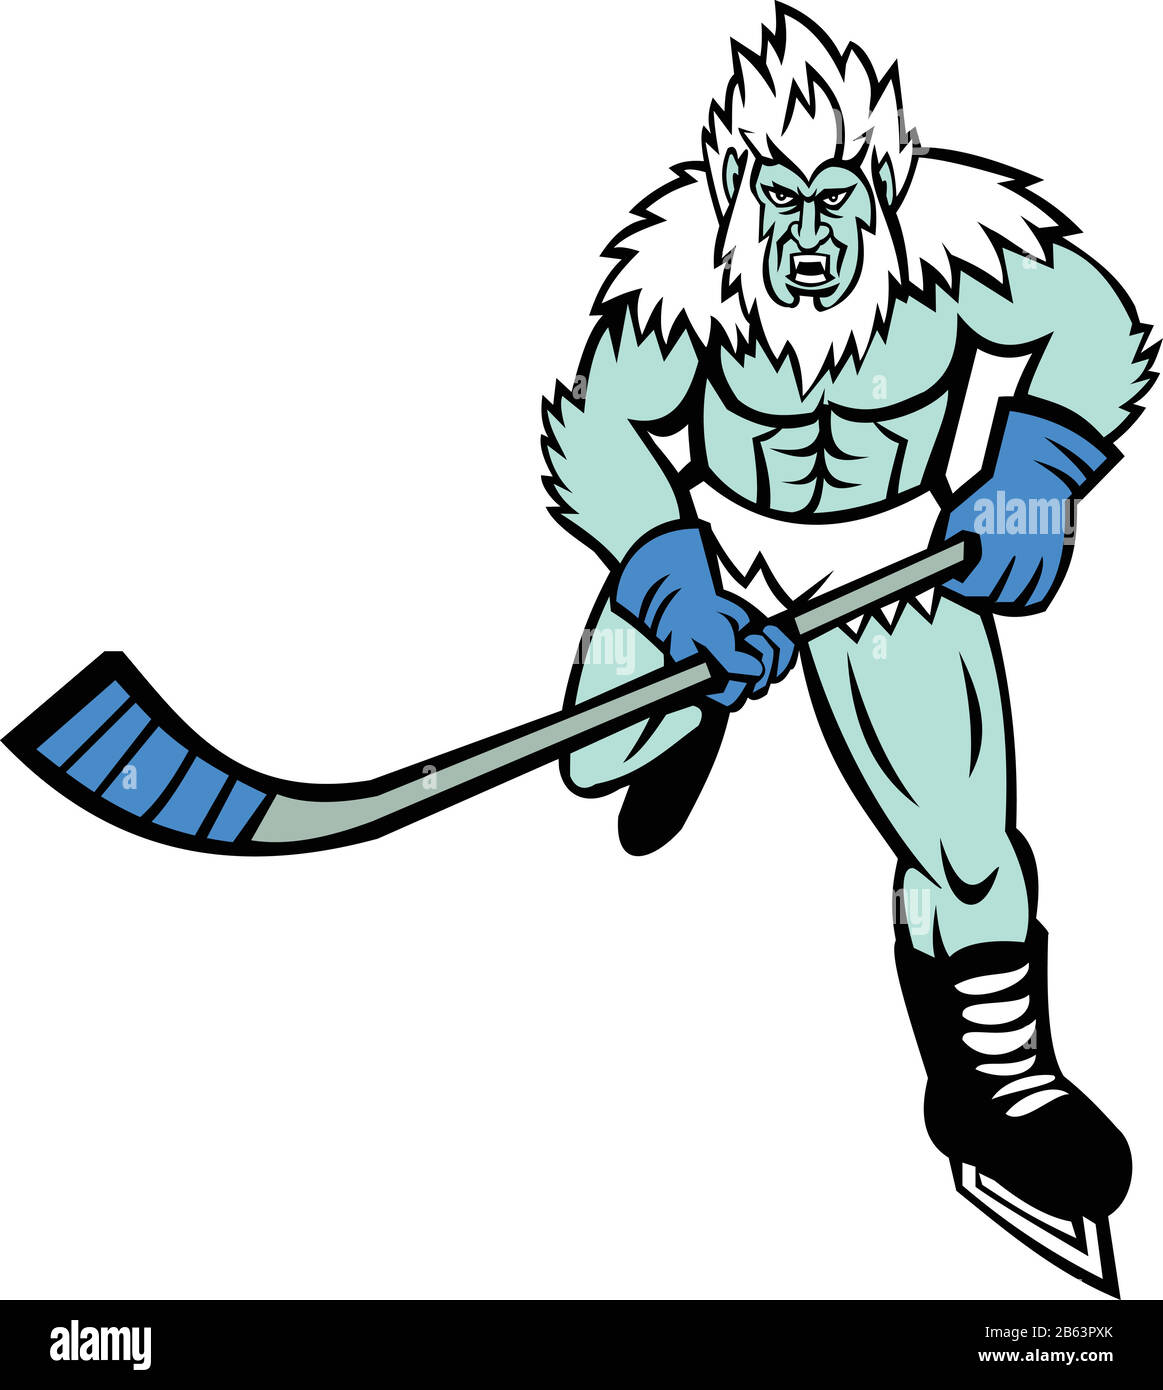 L'icône mascotte d'un bonhomme de neige en colère Yeti ou Abominable, une  créature de type singe folklorique, avec un bâton de hockey jouant au  hockey sur glace vu de l'avant Image Vectorielle